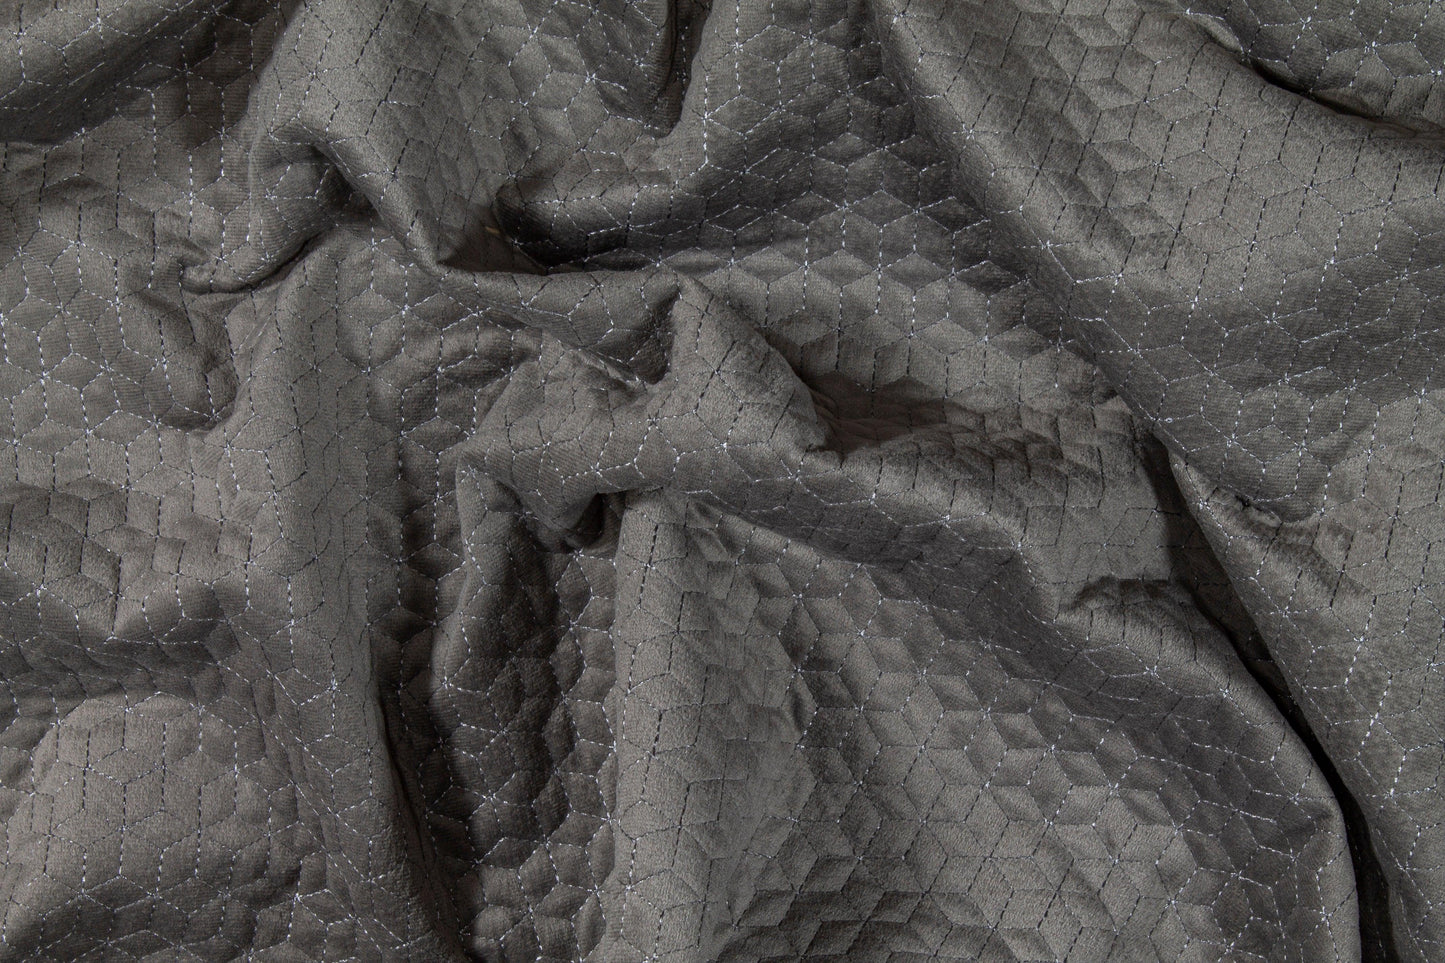 Geometric Velvet Upholstery - Gray - Prime Fabrics